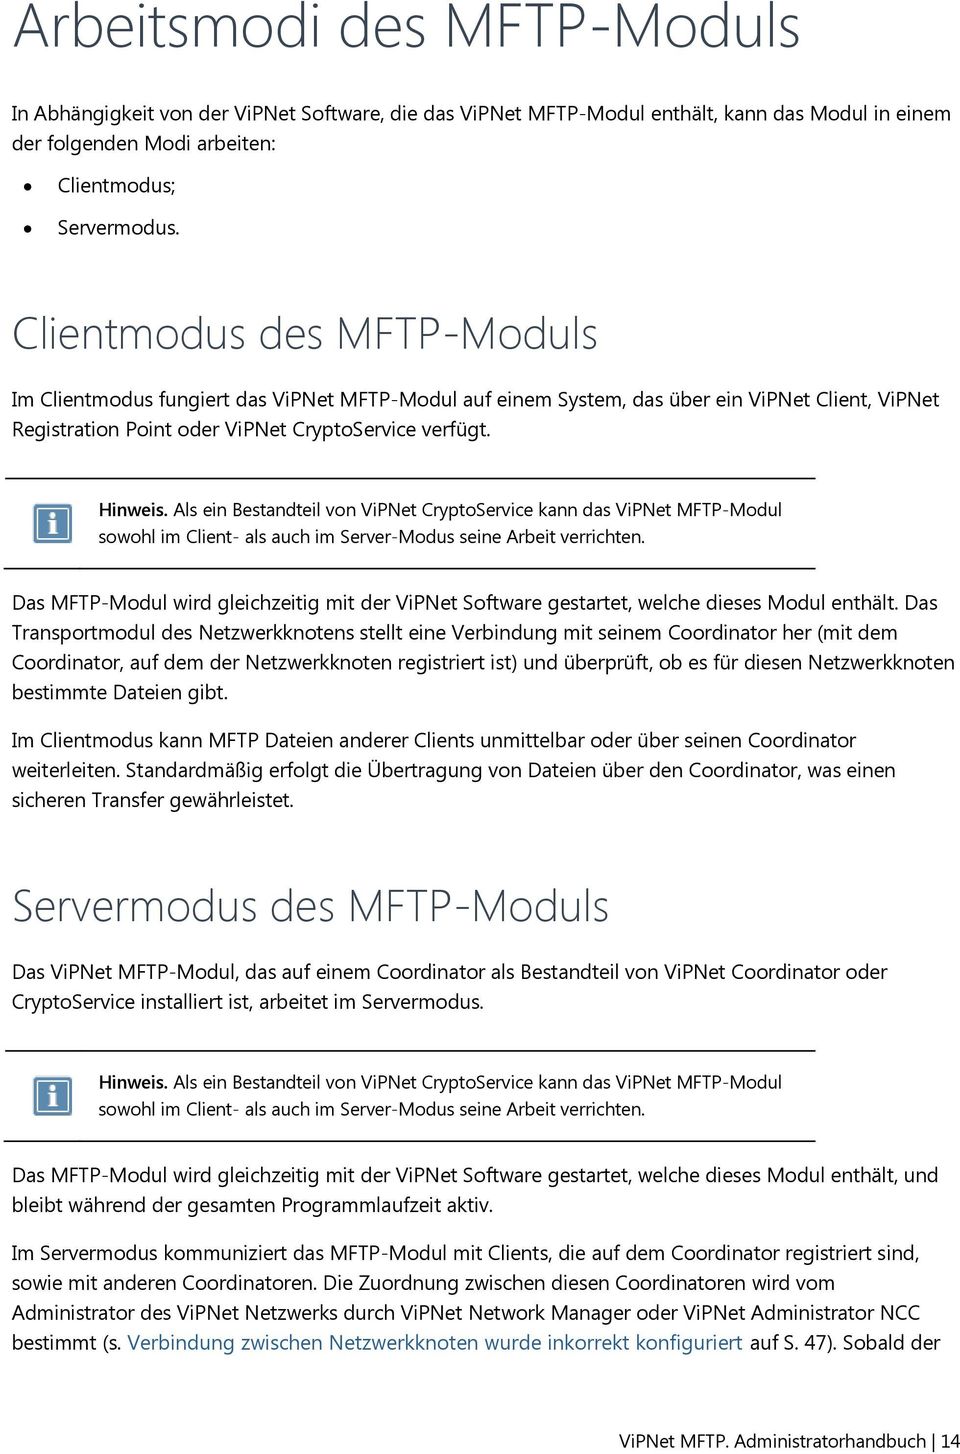 Als ein Bestandteil vn ViPNet CryptService kann das ViPNet MFTP-Mdul swhl im Client- als auch im Server-Mdus seine Arbeit verrichten.